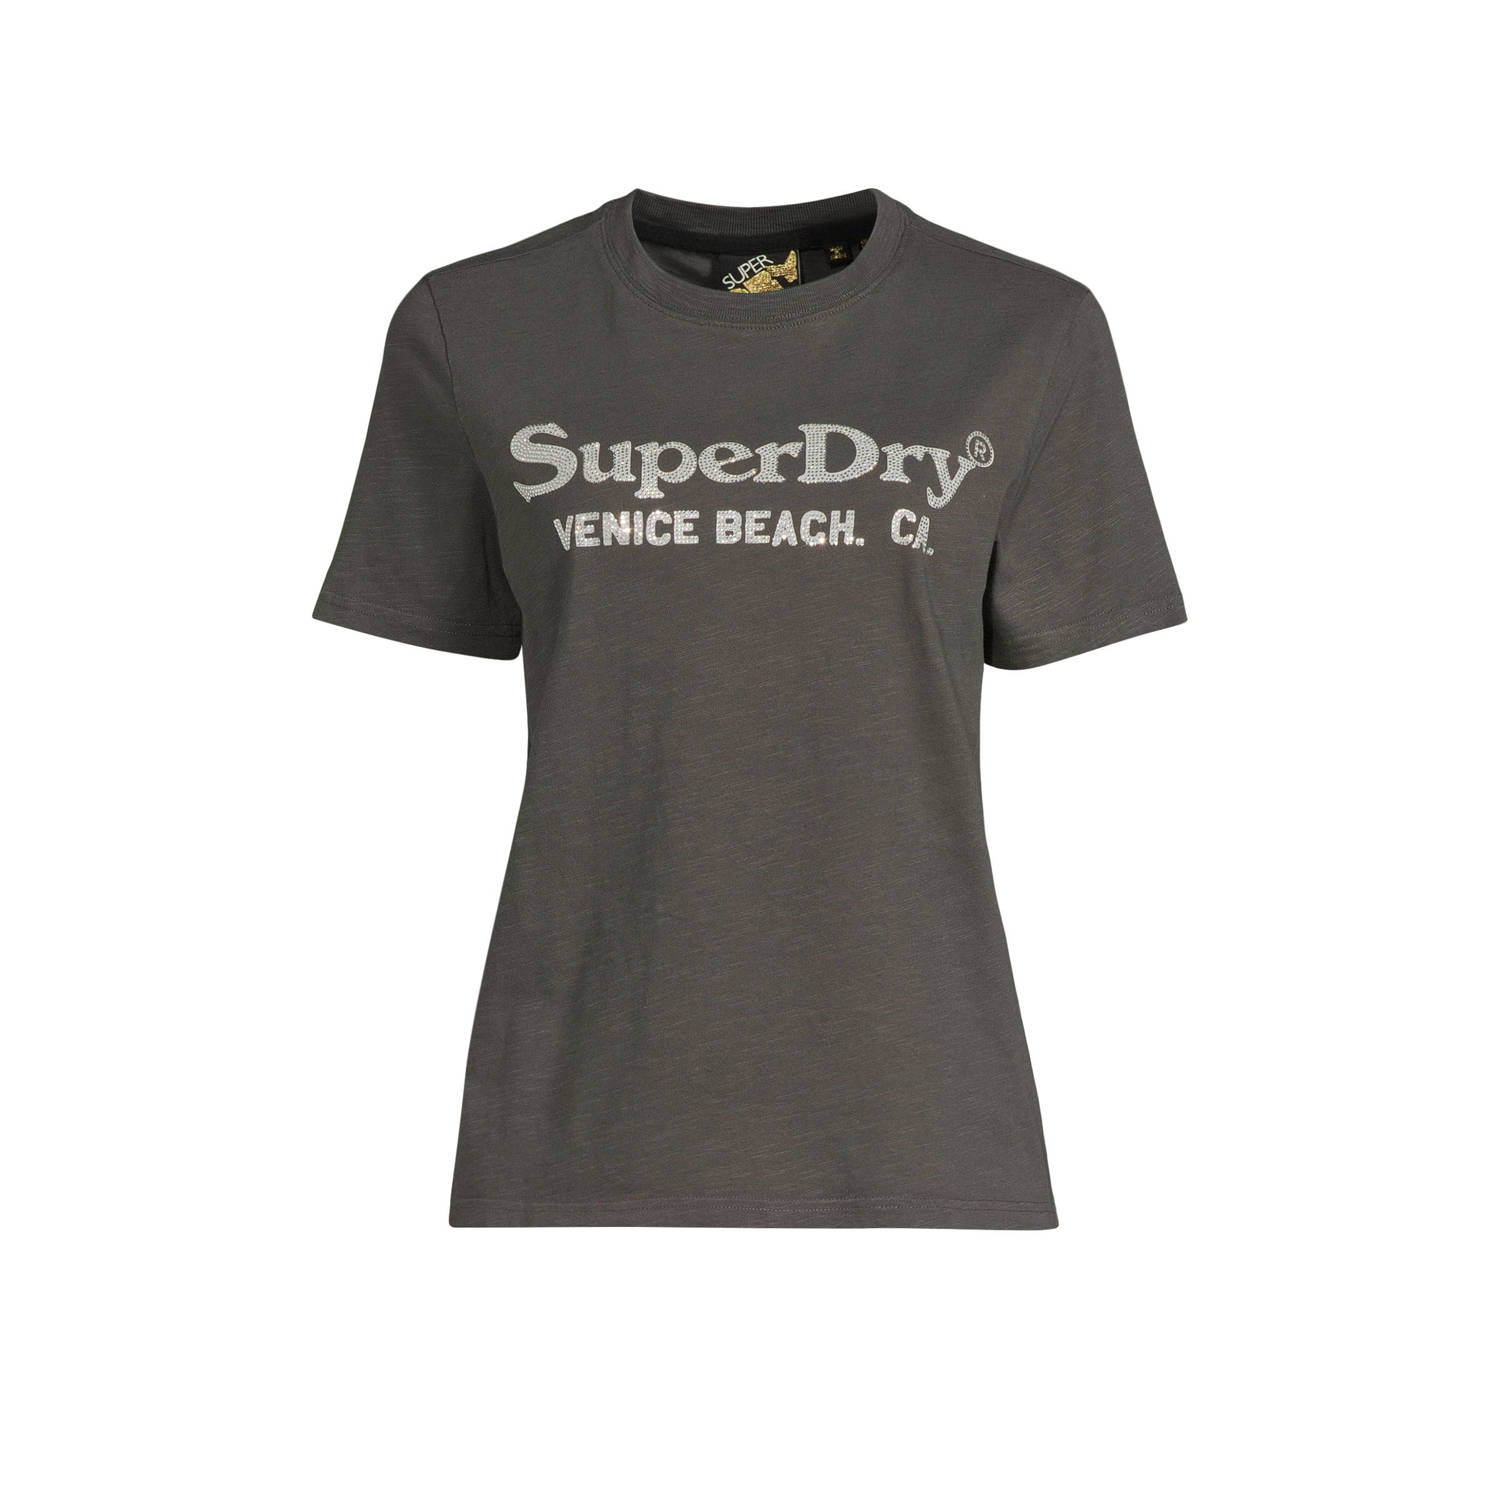 Superdry T-shirt met printopdruk antraciet